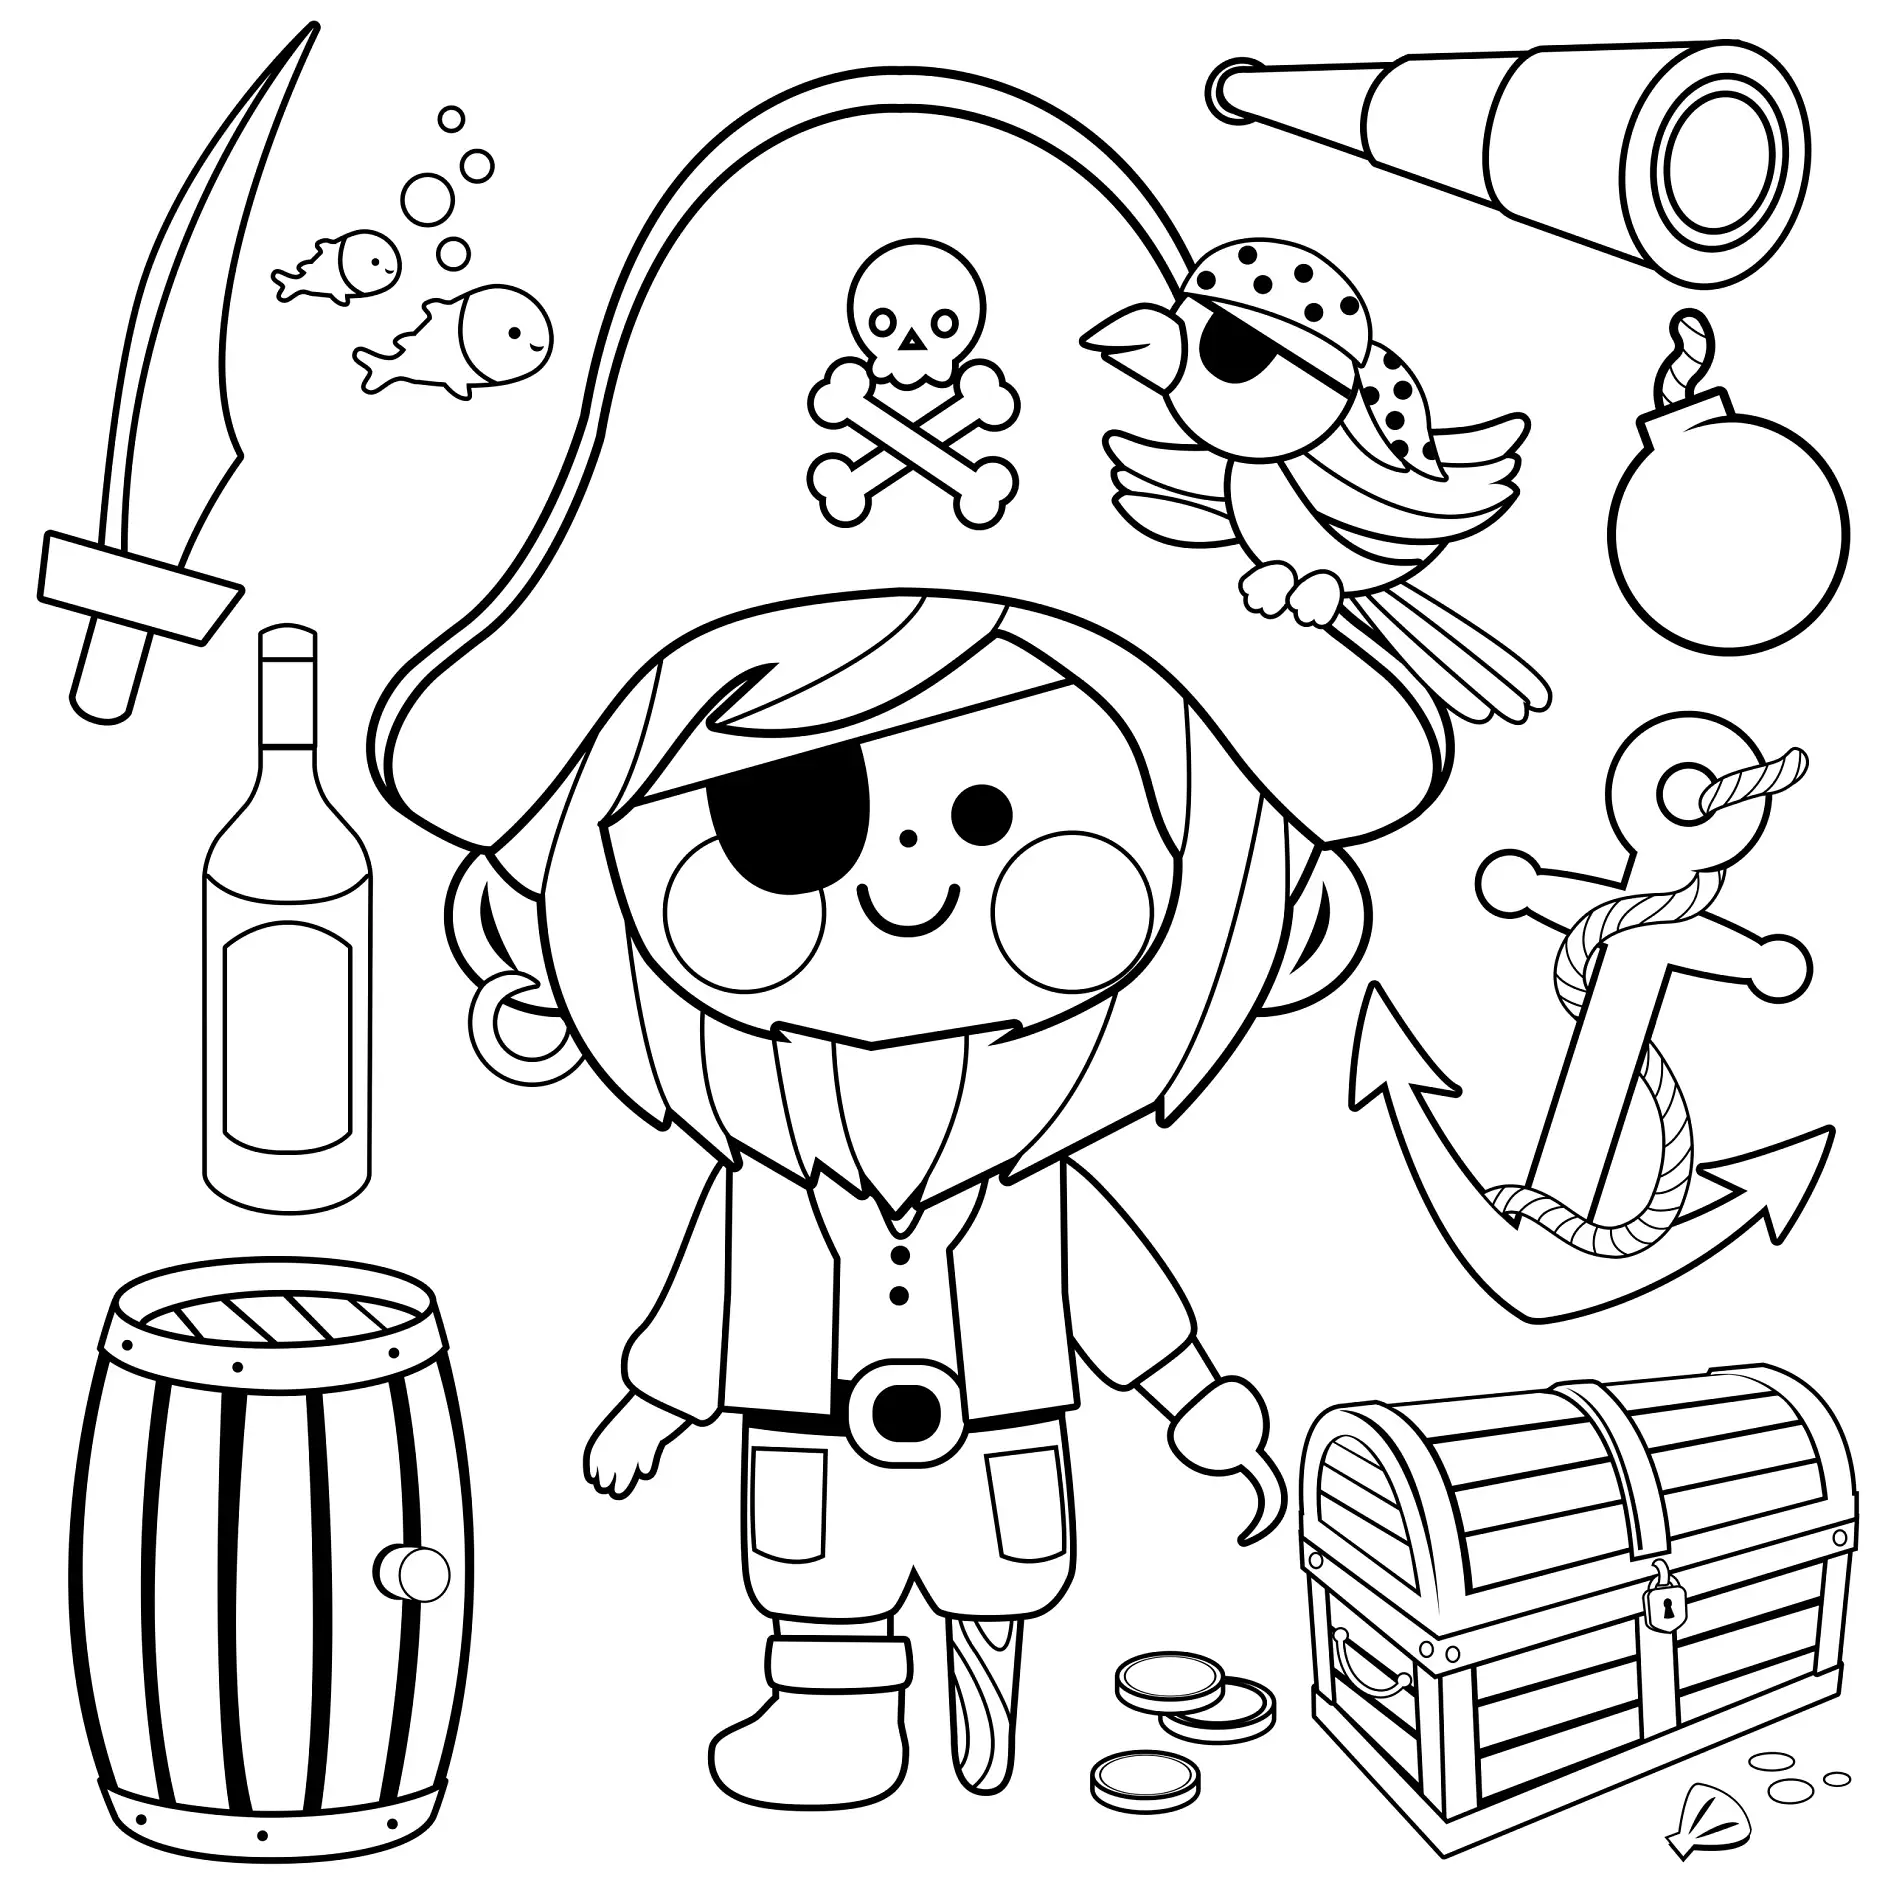 Ausmalbild Pirat mit Augenklappe und Piratenutensilien umgeben